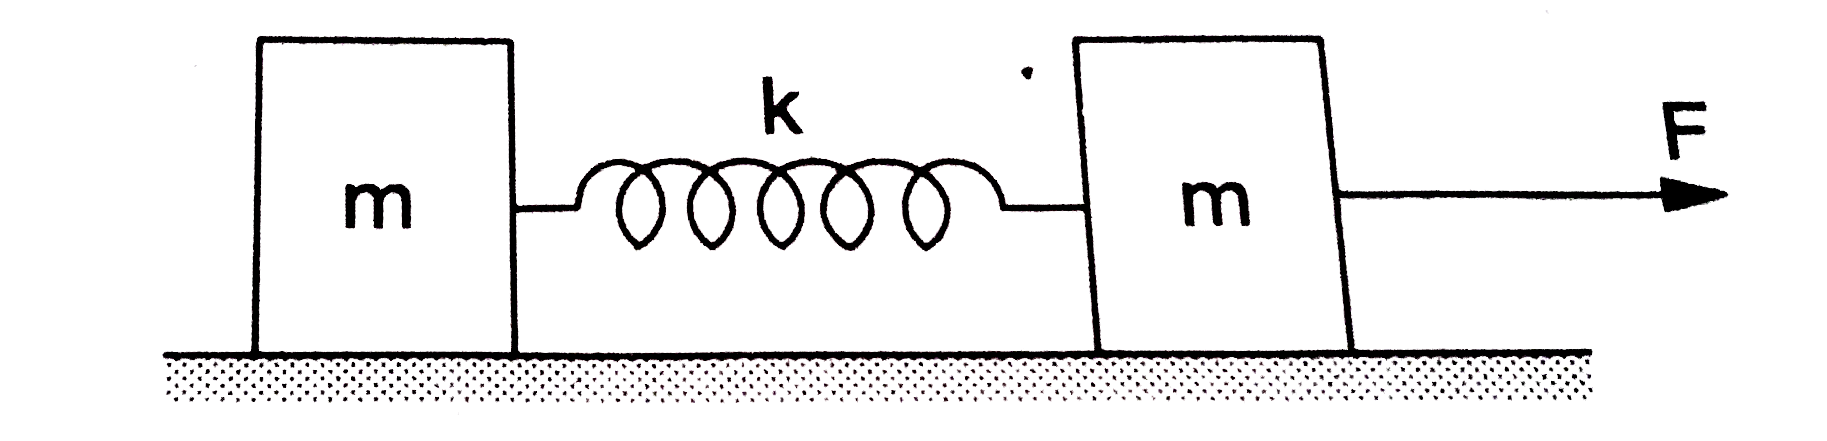 बराबर द्रव्यमान m के दो गुटके एक स्प्रिंग के दोनों किनारो से जुड़े है| गुटके एक घर्षणरहित क्षैतिज सतह पर रखे गए हैं| स्पेईंग अपनी स्वाभाविक लम्बाई में है | t=0 समय के बाद एक गुटके पर एकसमान बल F लगाकर उसे गुटके से दूर की दिशा में खींचा जाता है (a) समय t  पर द्रव्यमान केंद्र का स्थान बताएँ | (b) इसी समय t पर स्प्रिंग की लम्बाई में वृध्दि x(0) है | इस समय तक में गुटको में हुए विस्थापनों के मन बताएँ | ltbr?gt